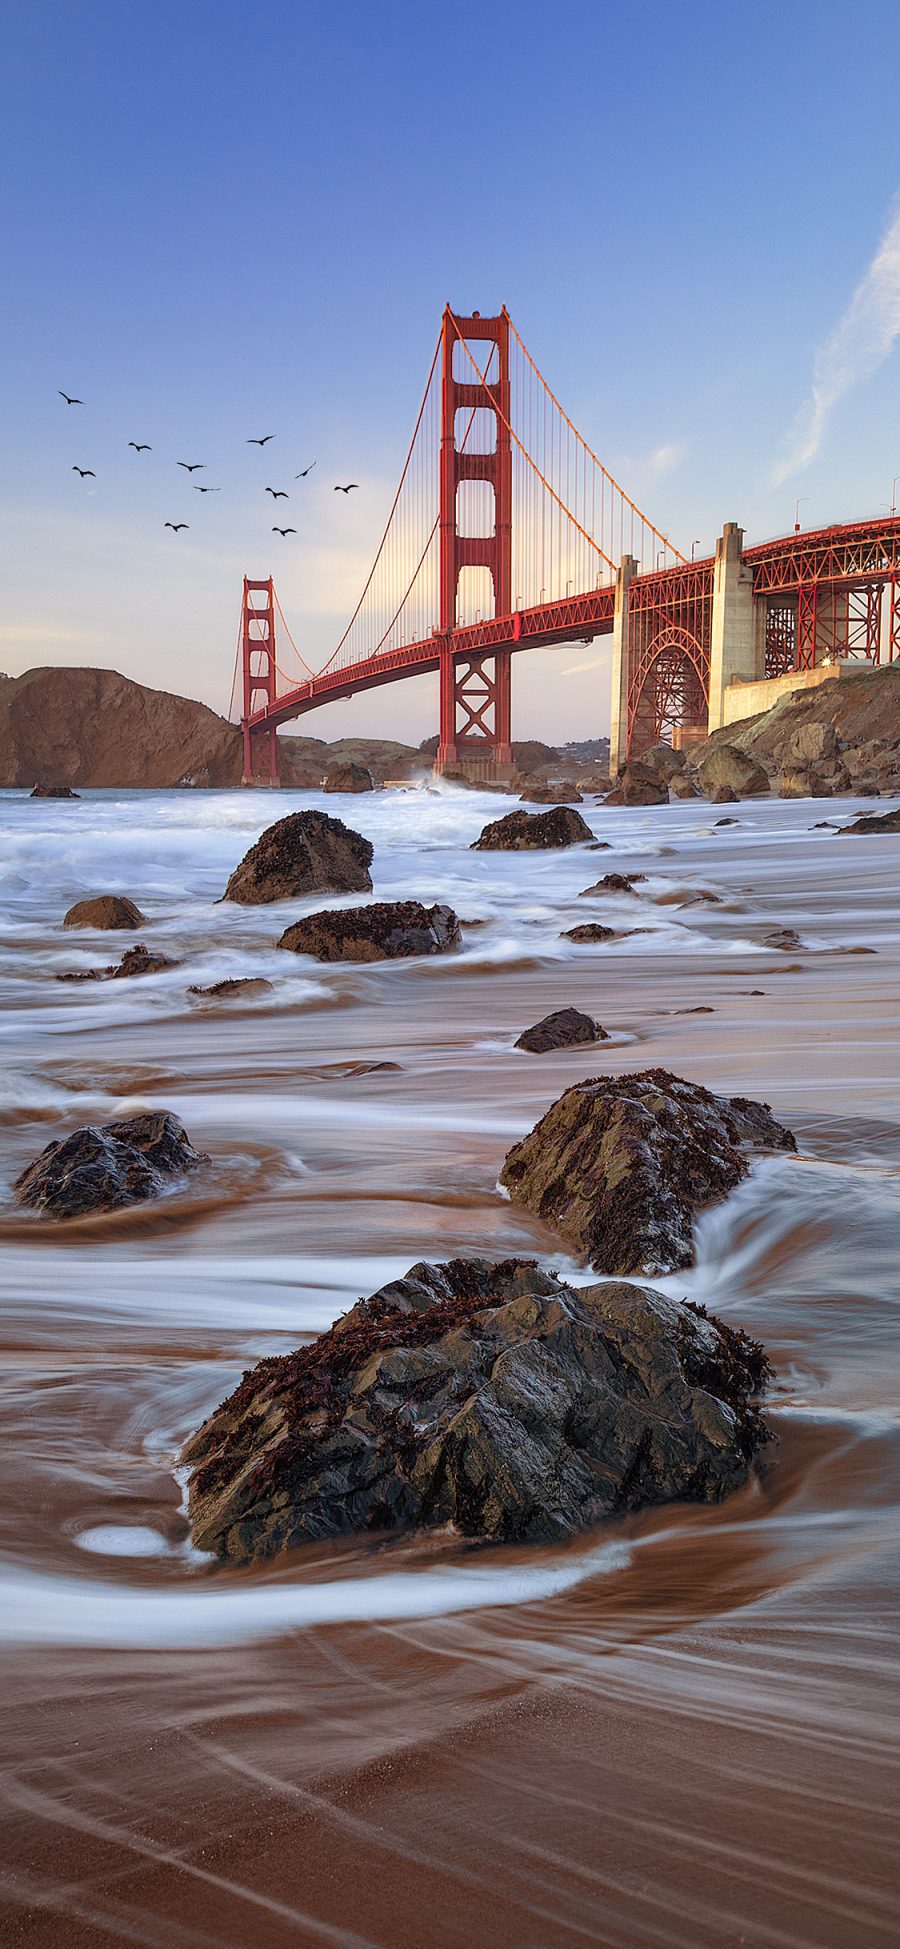 [2436×1125]美国 旧金山 地标 桥梁 客流 苹果手机壁纸图片